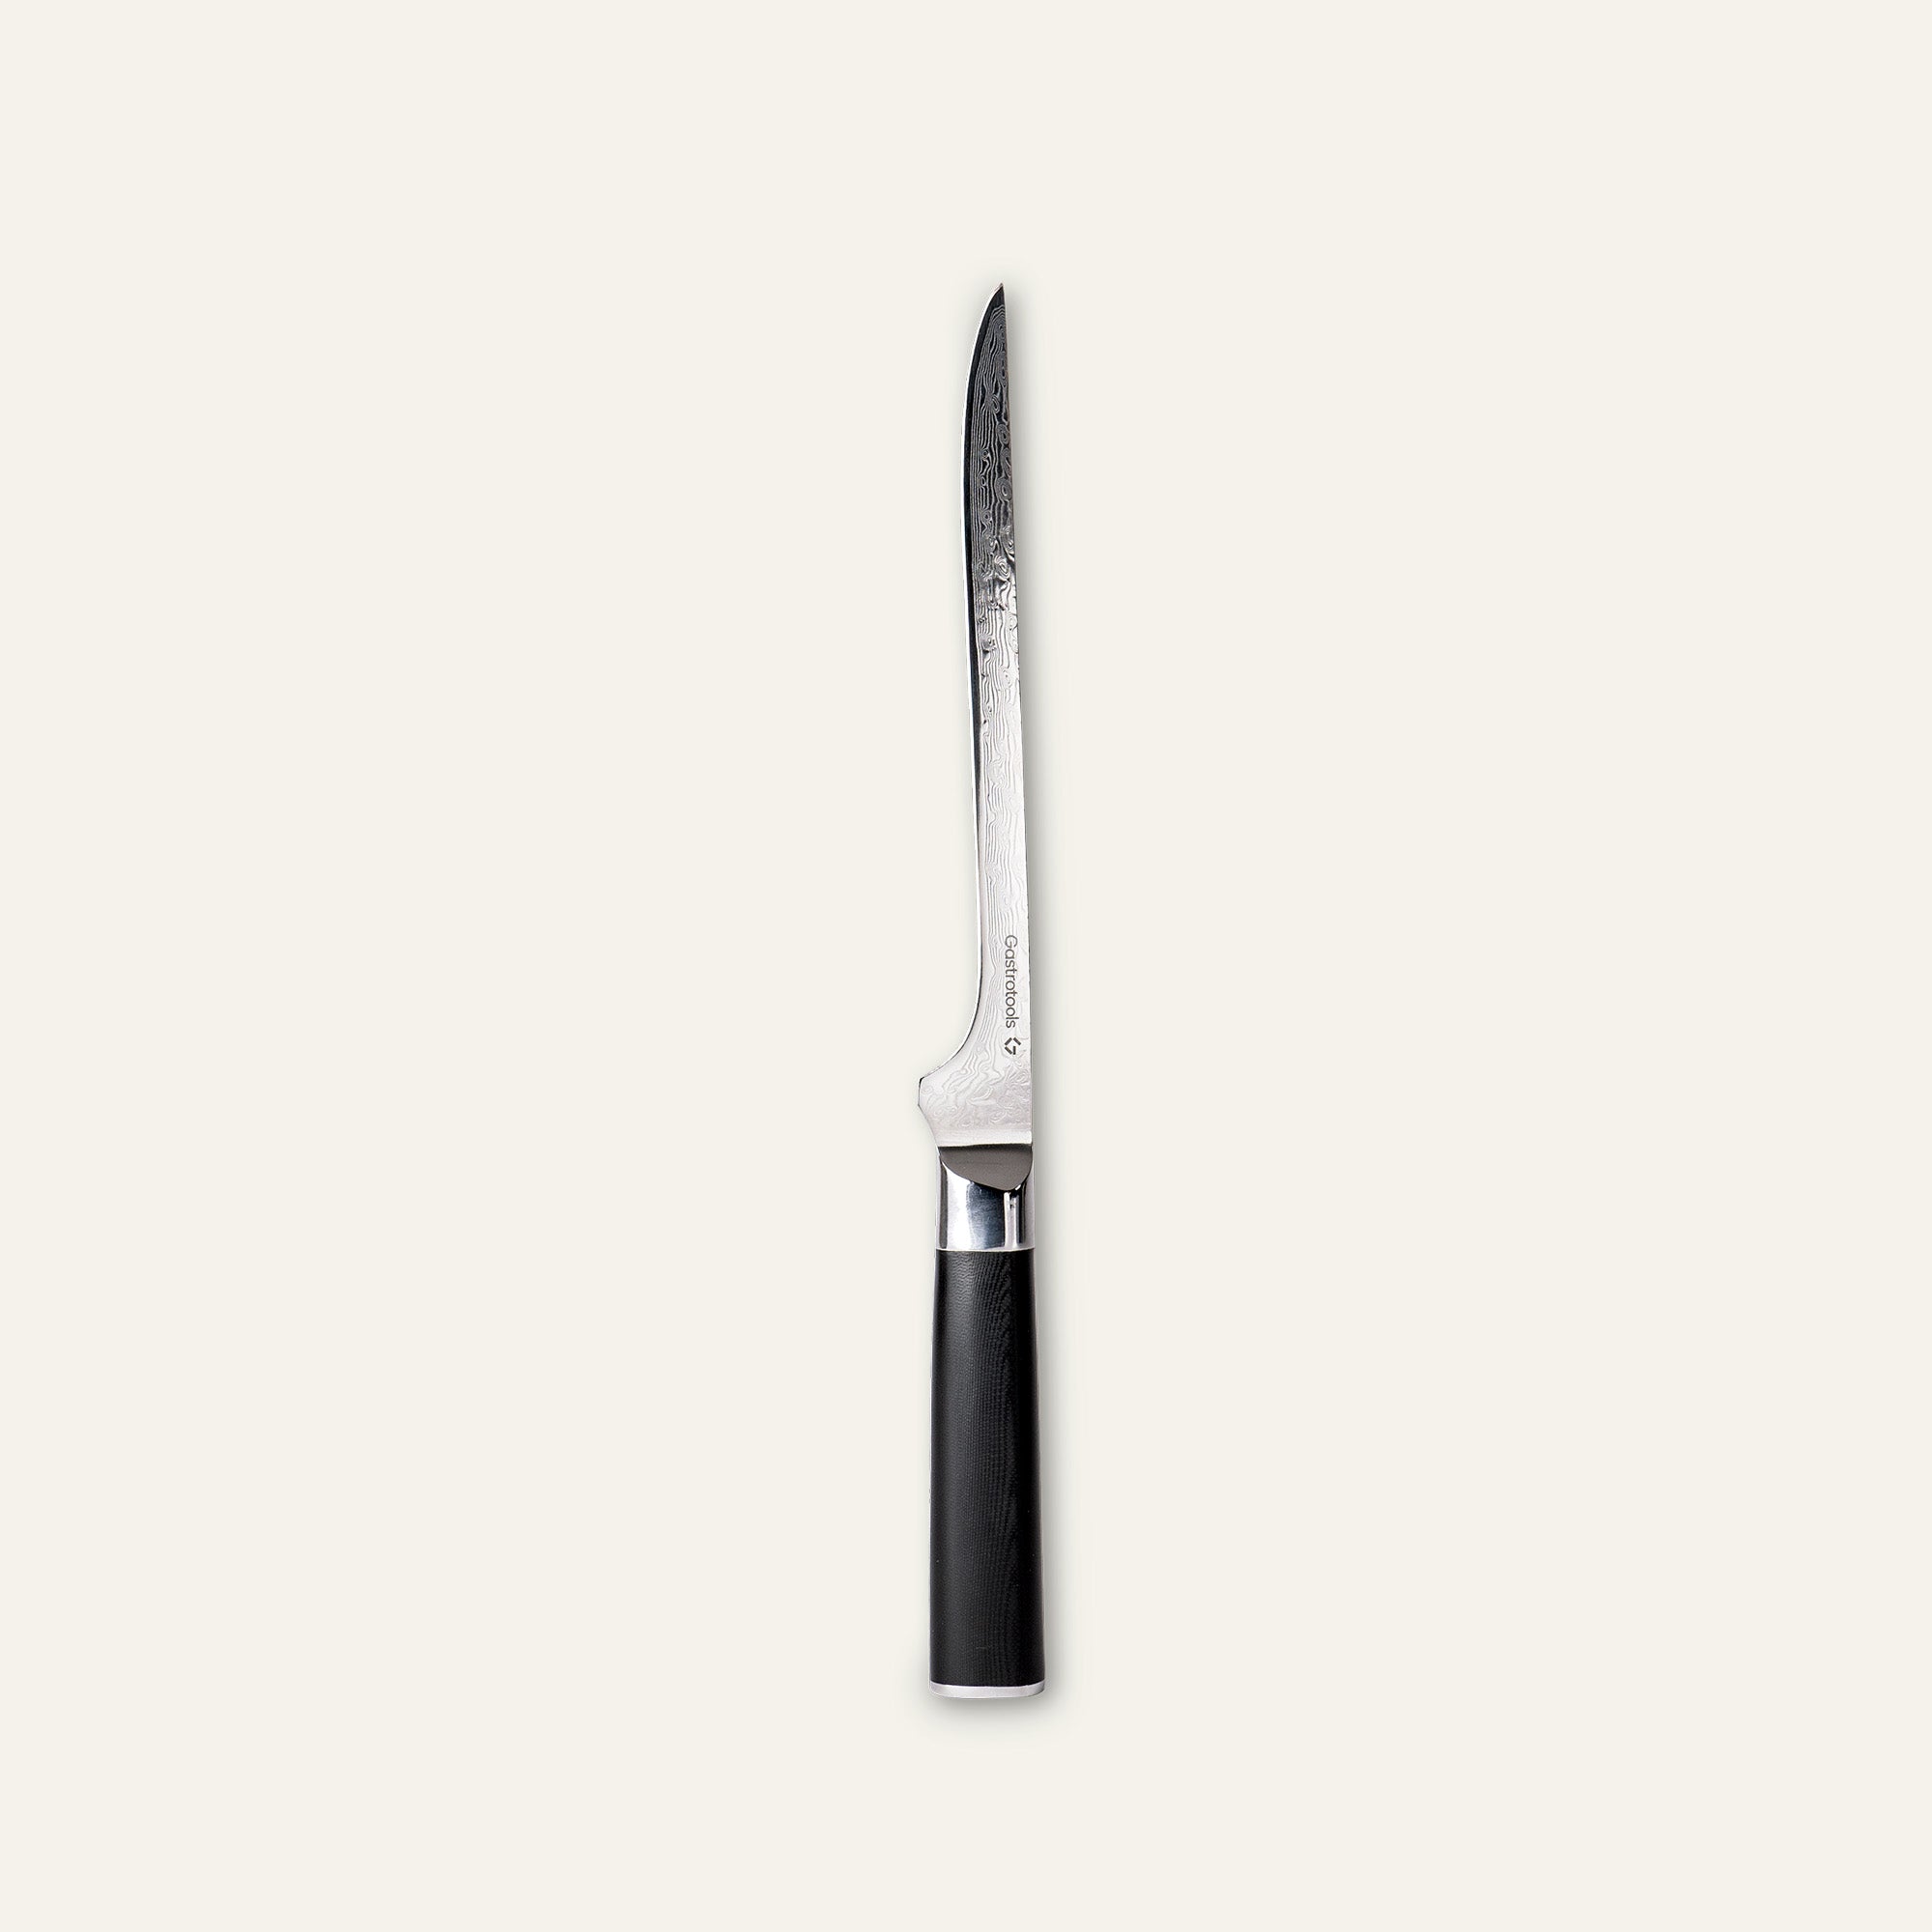 Billede af Gastrotools Filetkniv - Limited Edition - 20 cm slankt blad - Ergonomisk antislip håndtag